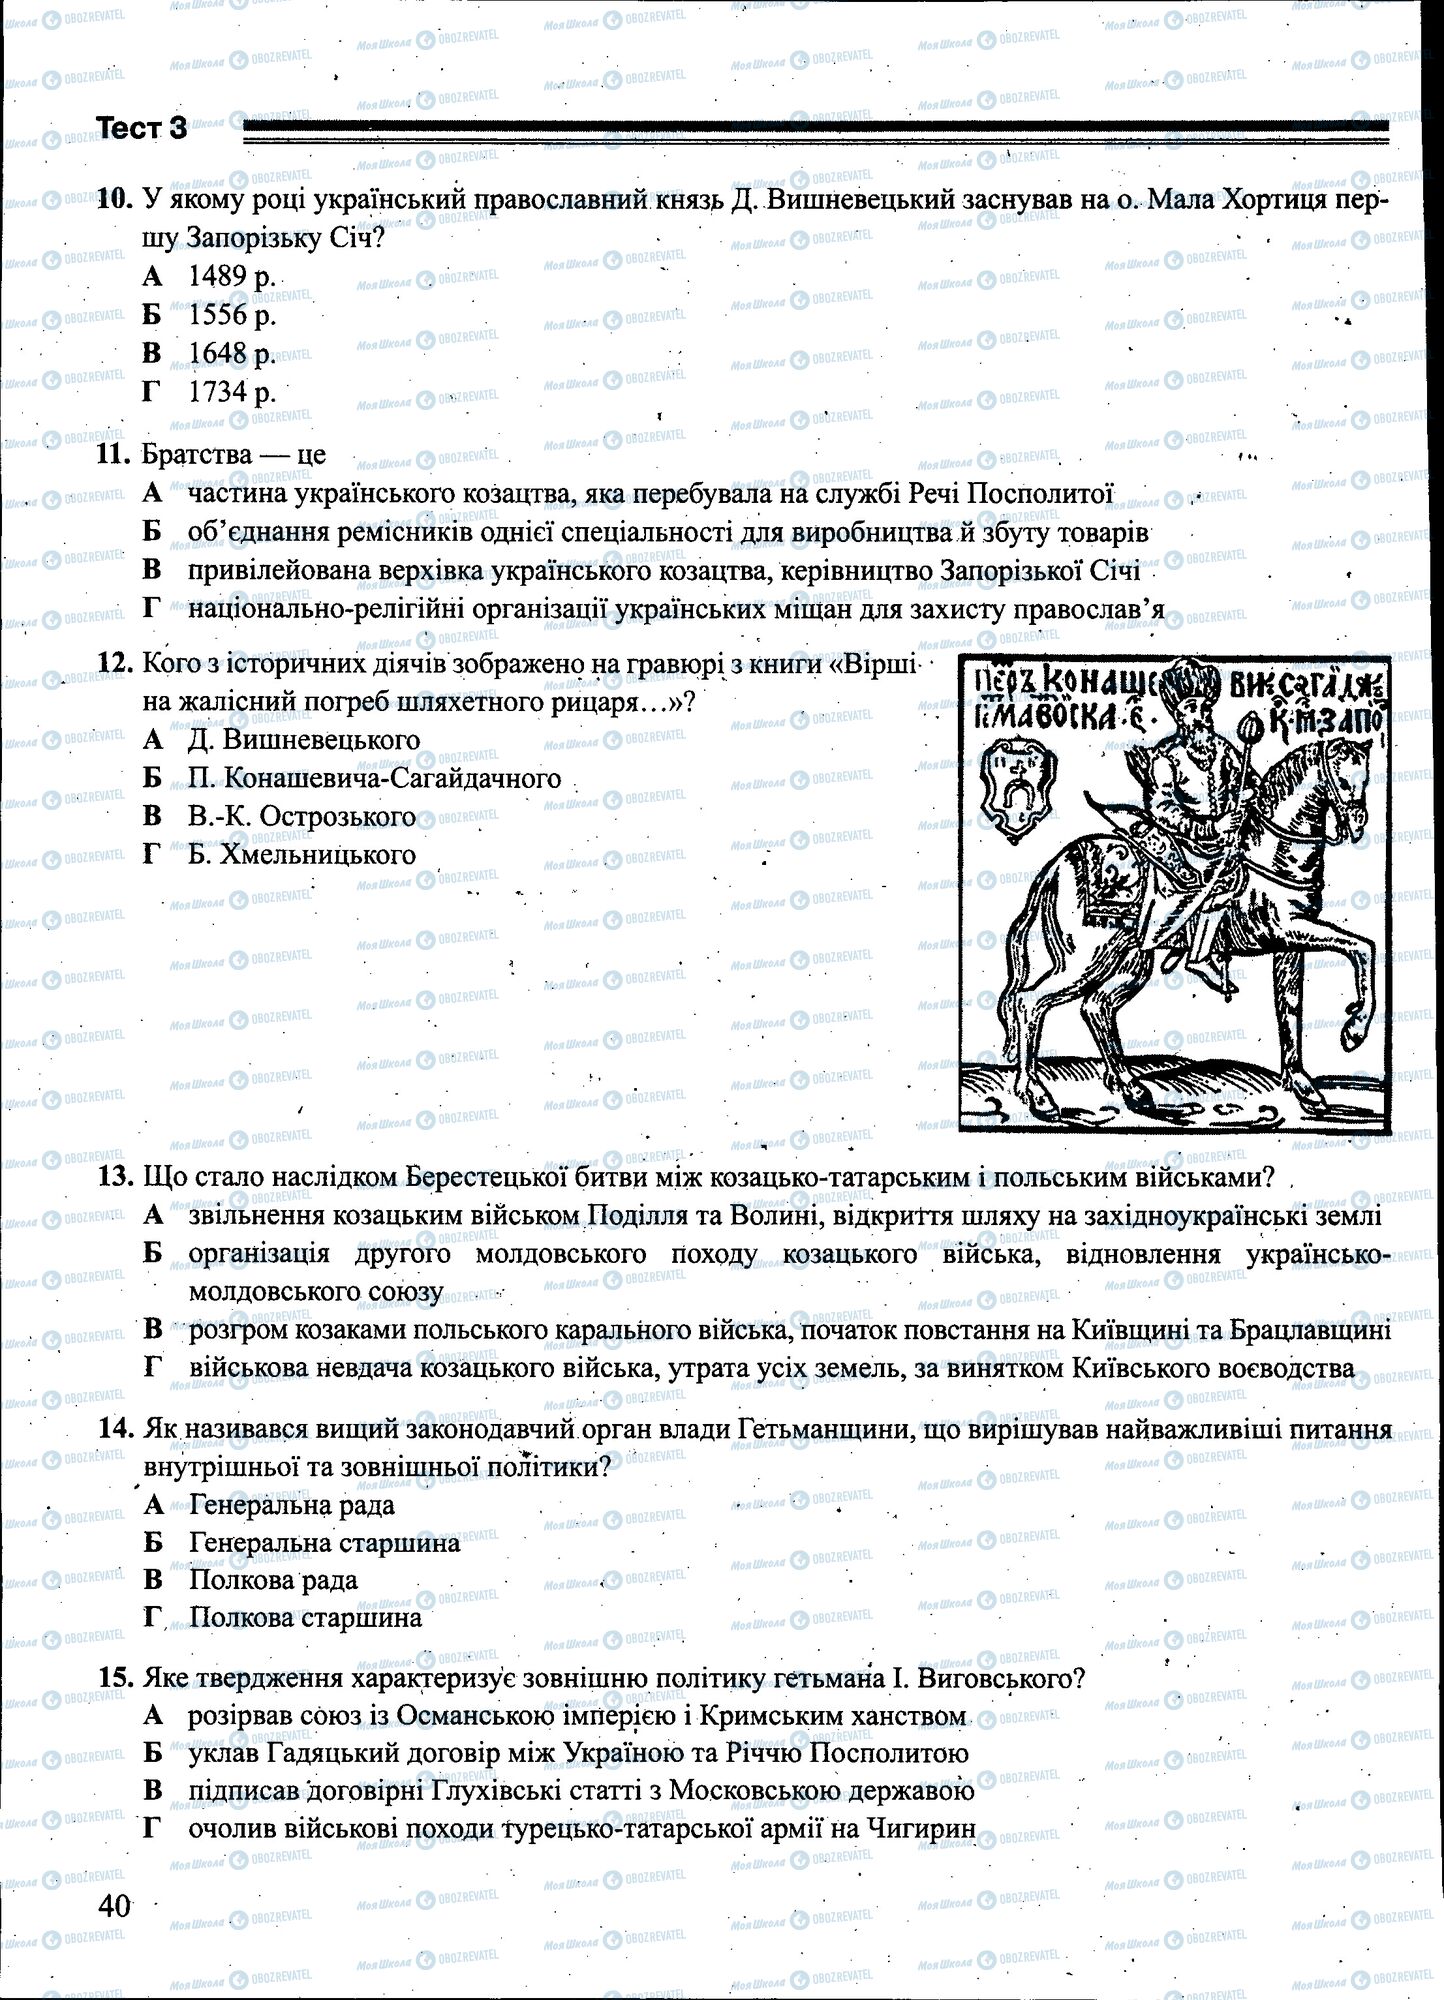 ЗНО История Украины 11 класс страница 040